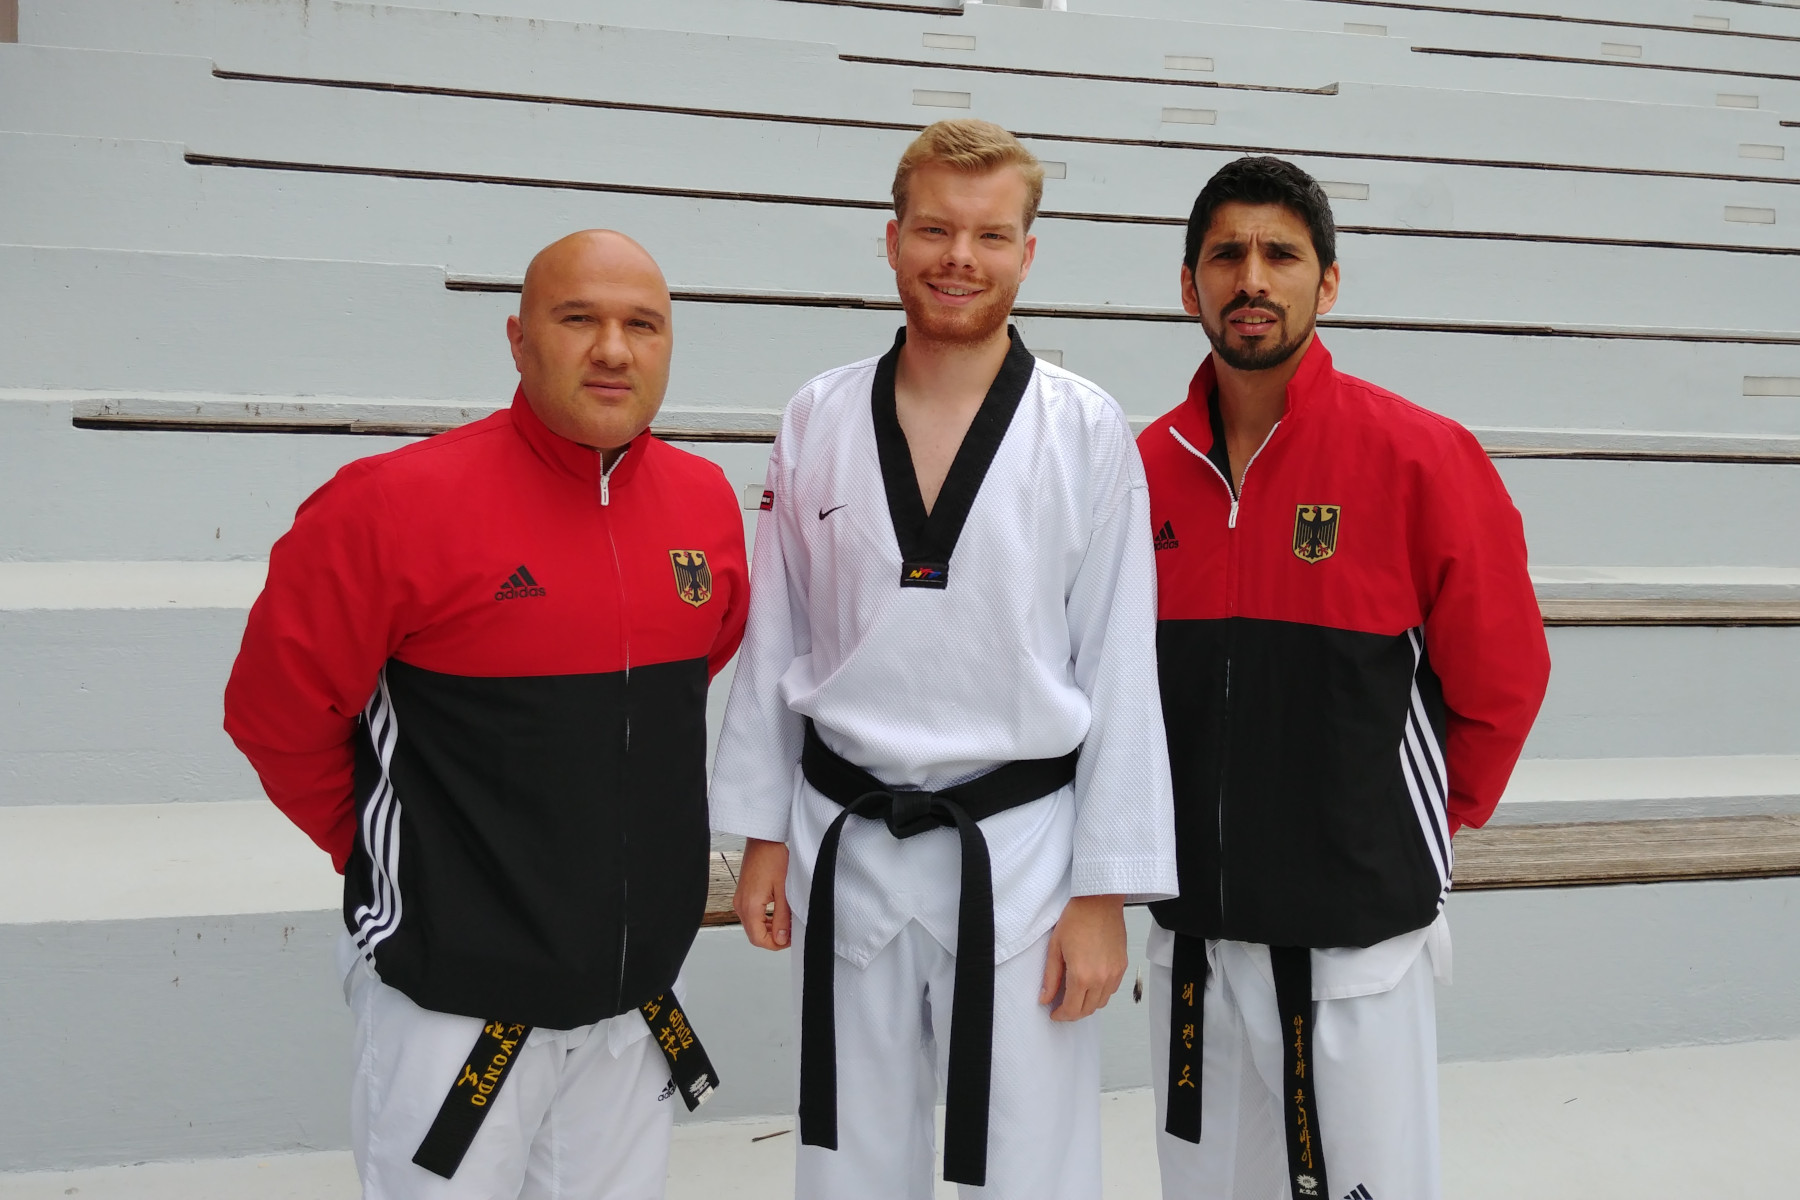 Savas Gürüz, TVSH-Kampfrichterreferent, und Paul Heinrich, Jugendleiter, mit dem DTU-Kampfrichterreferent, Abdullah Ünlübay